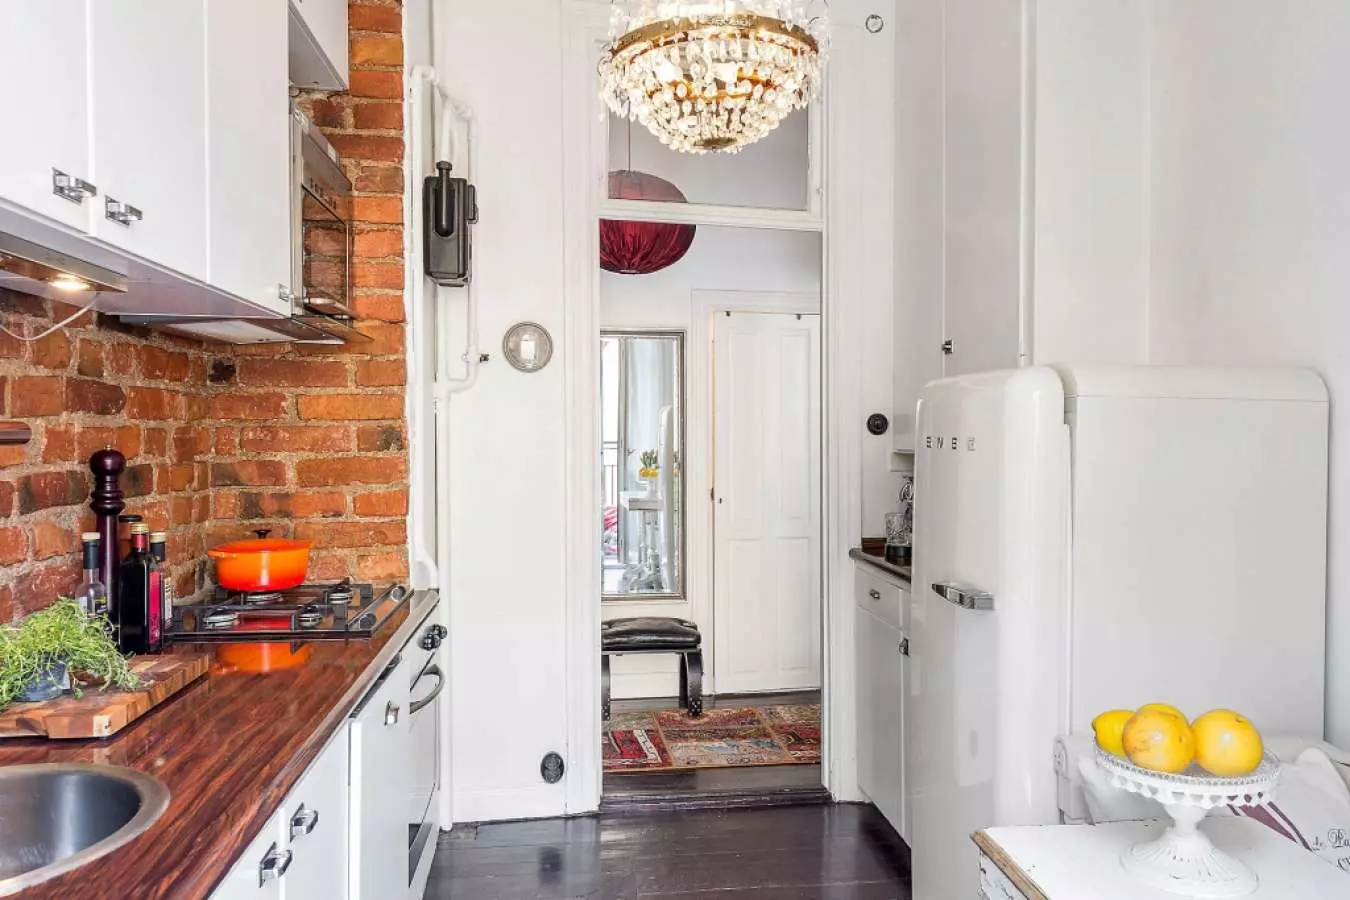 Desain dapur kecil dengan lemari es (76 foto): Di mana harus meletakkan kulkas? Pojok dan headset dapur built-in dengan kulkas di interior. Bagaimana cara menempatkannya di kamar dengan jendela? 9504_43